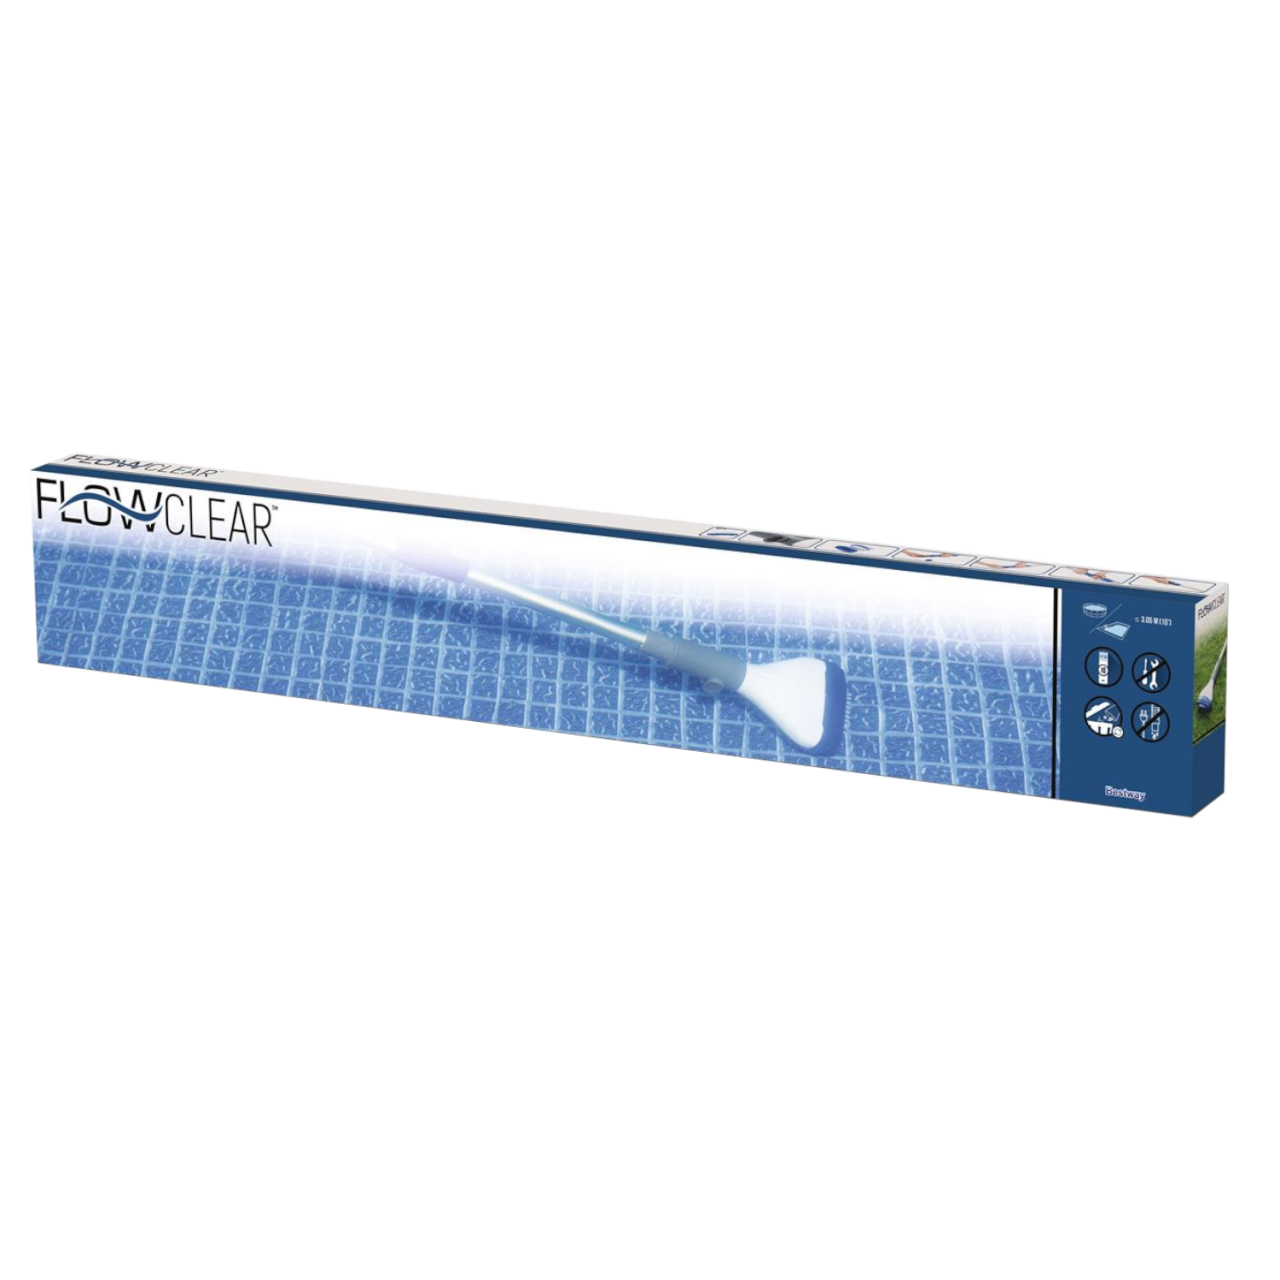 Bestway Flowclear AquaScan Poolsauger batteriebetrieben SPA-Sauger Vakuumsauger